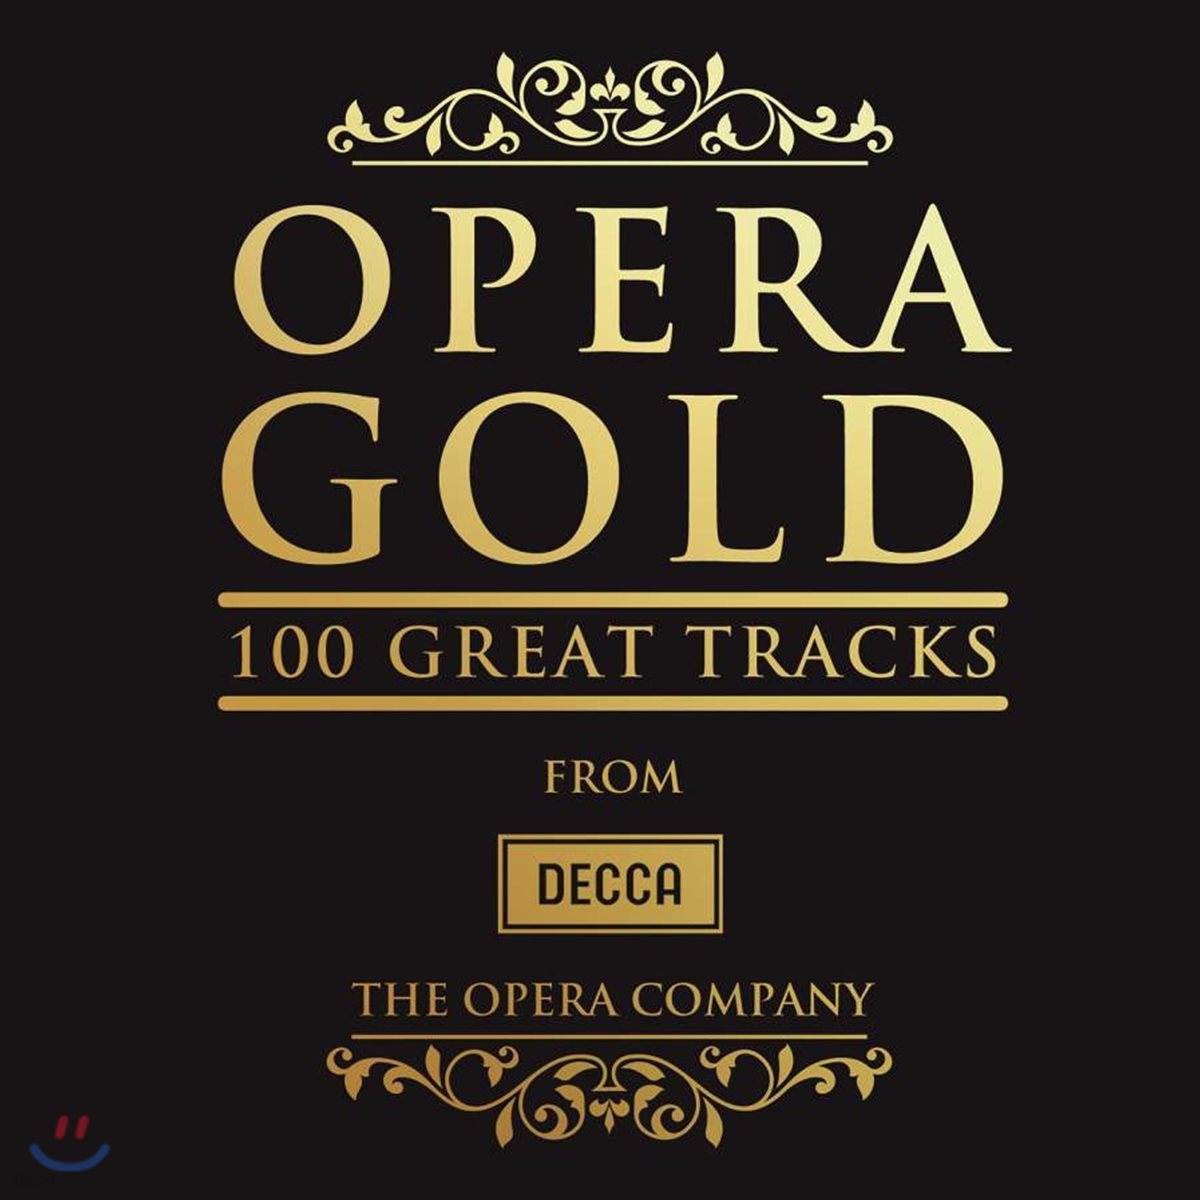 데카 오페라 골드 100 (Decca Opera Gold 100 Great Tracks - The Opera Company)